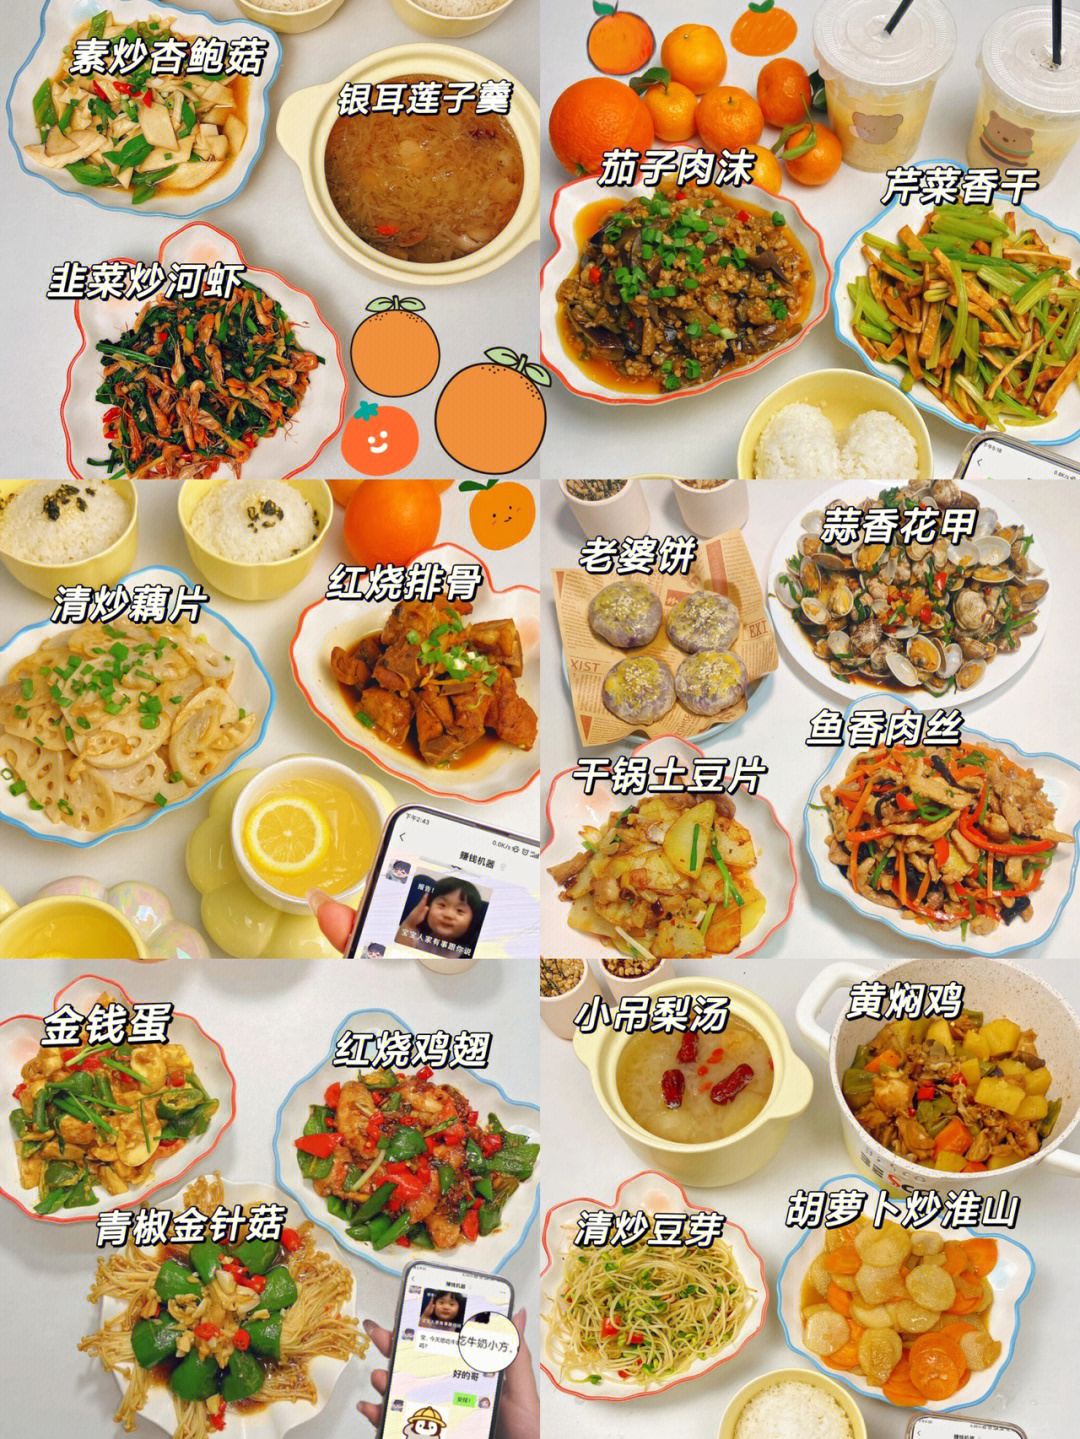 100种简单晚餐做法窍门图片